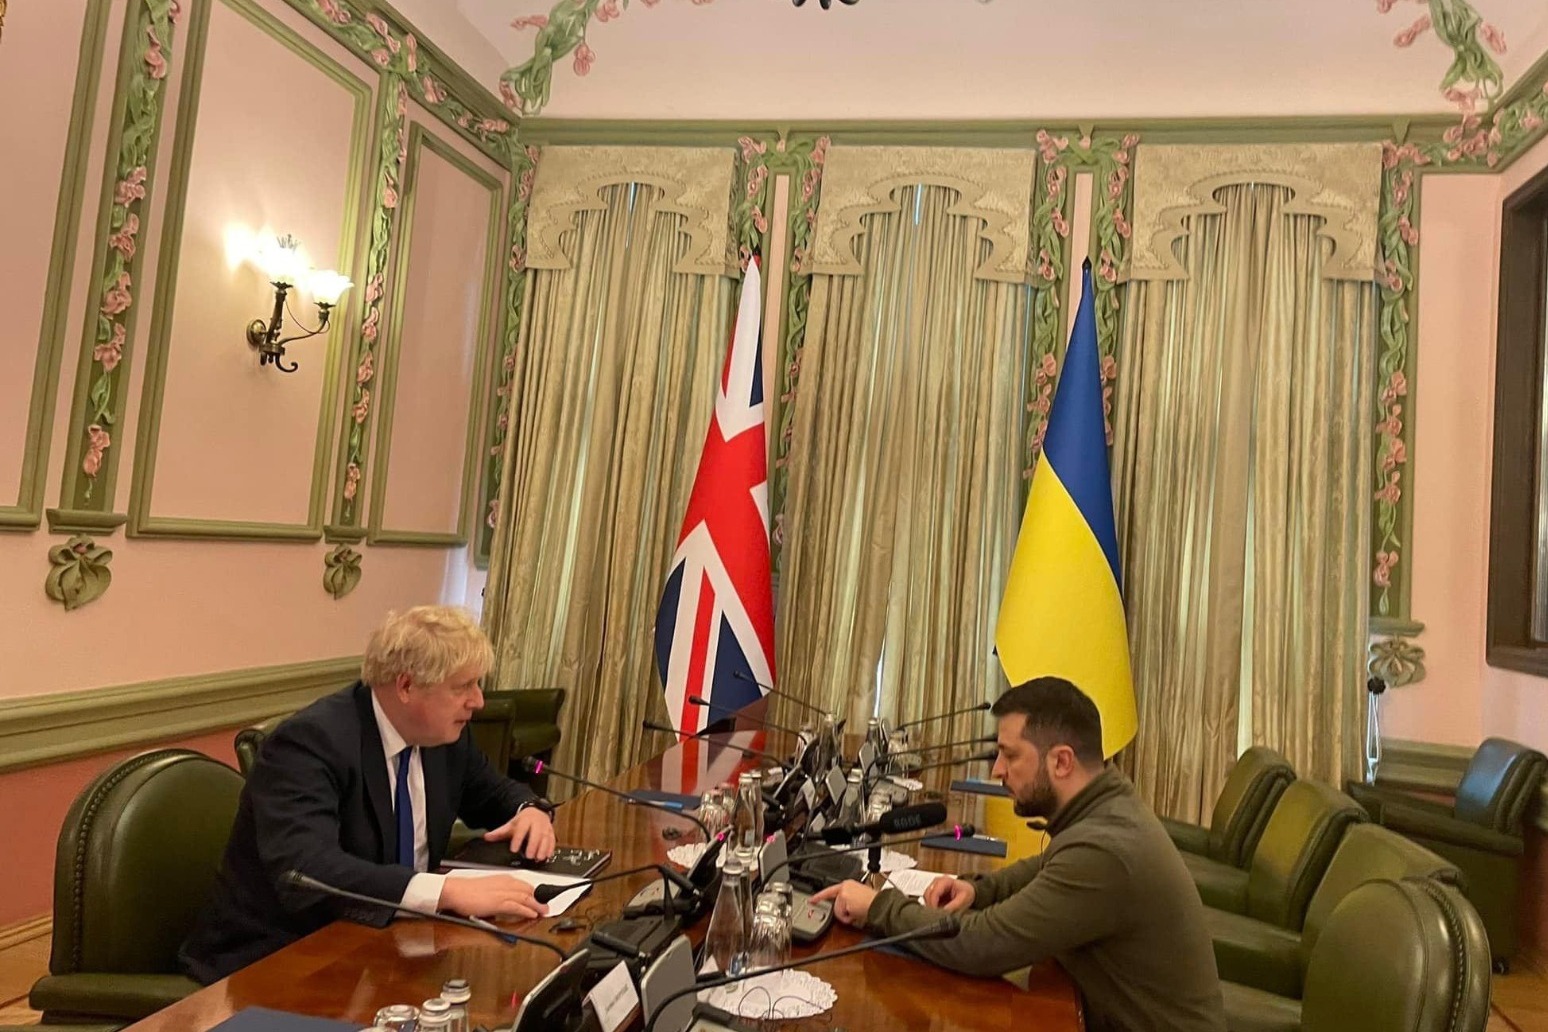 Boris Johnson meets President Zelensky in Kyiv 